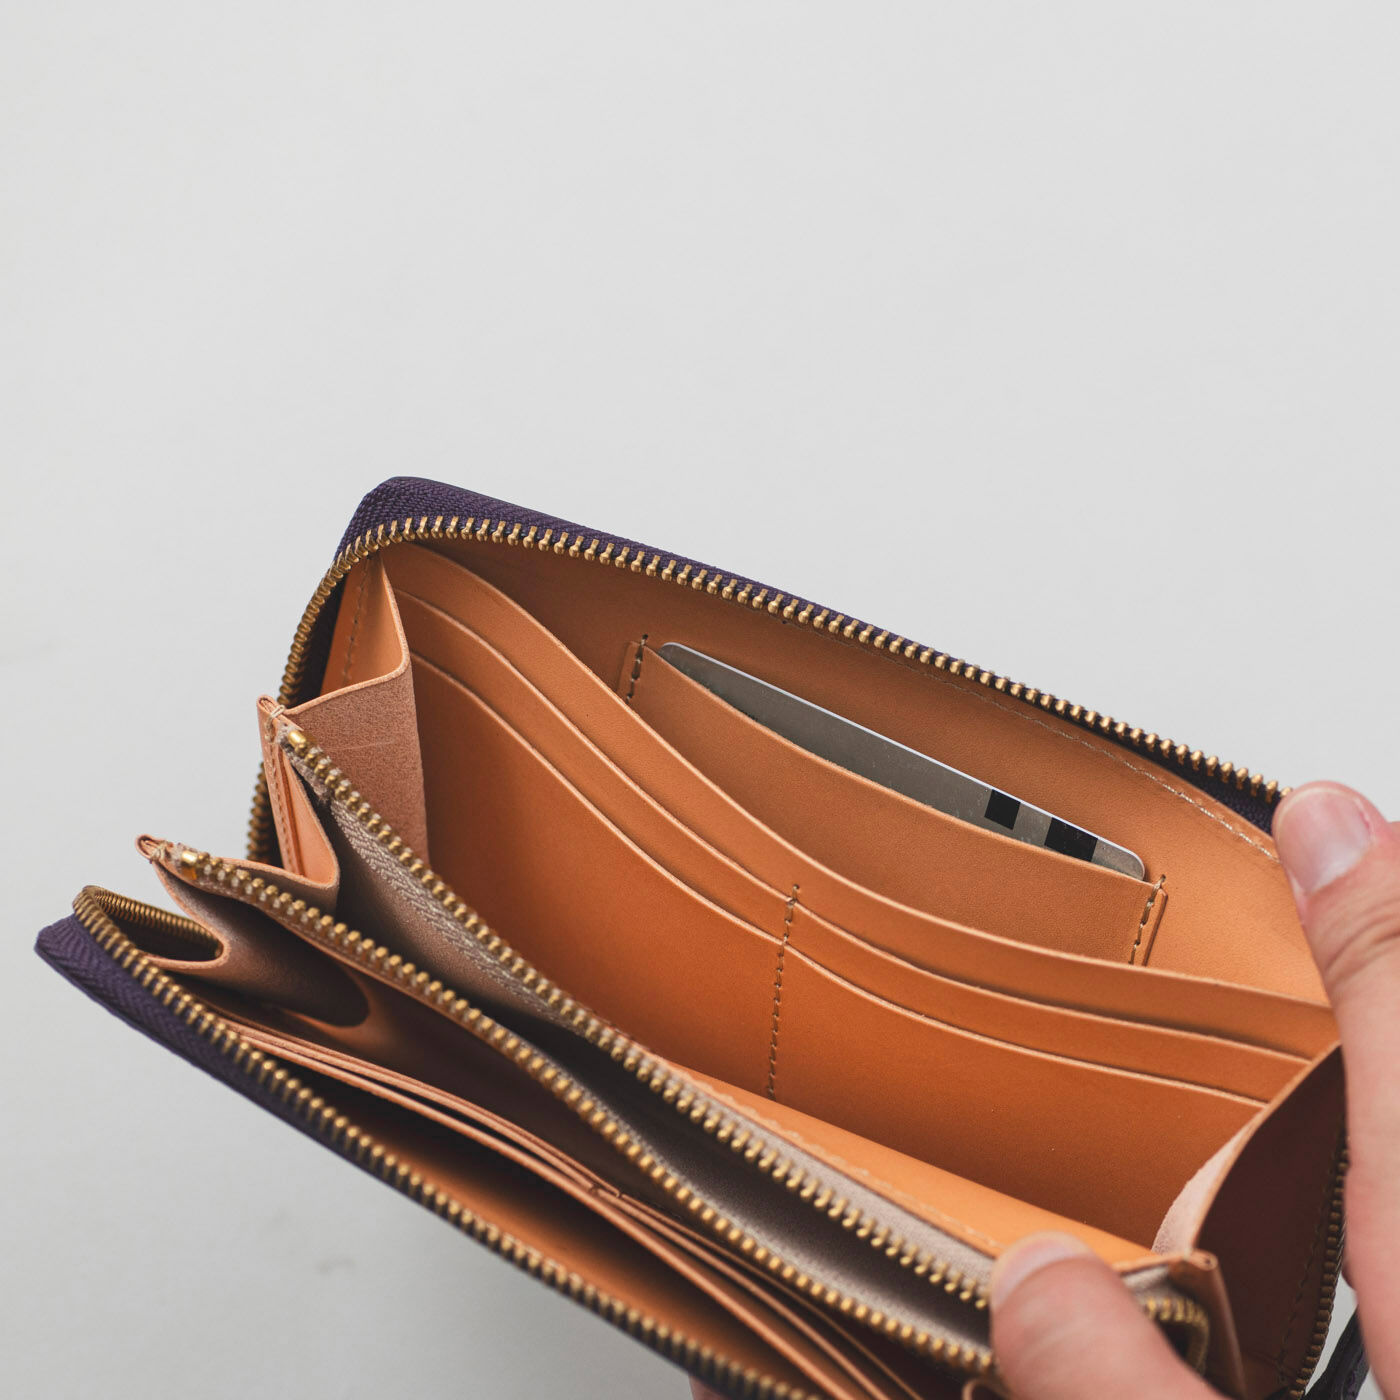 ＆Stories|福岡の鞄作家と作った 職人本革のカフェウォレット〈グレープ色〉|入れたままタッチできるICカードポケットが1個。